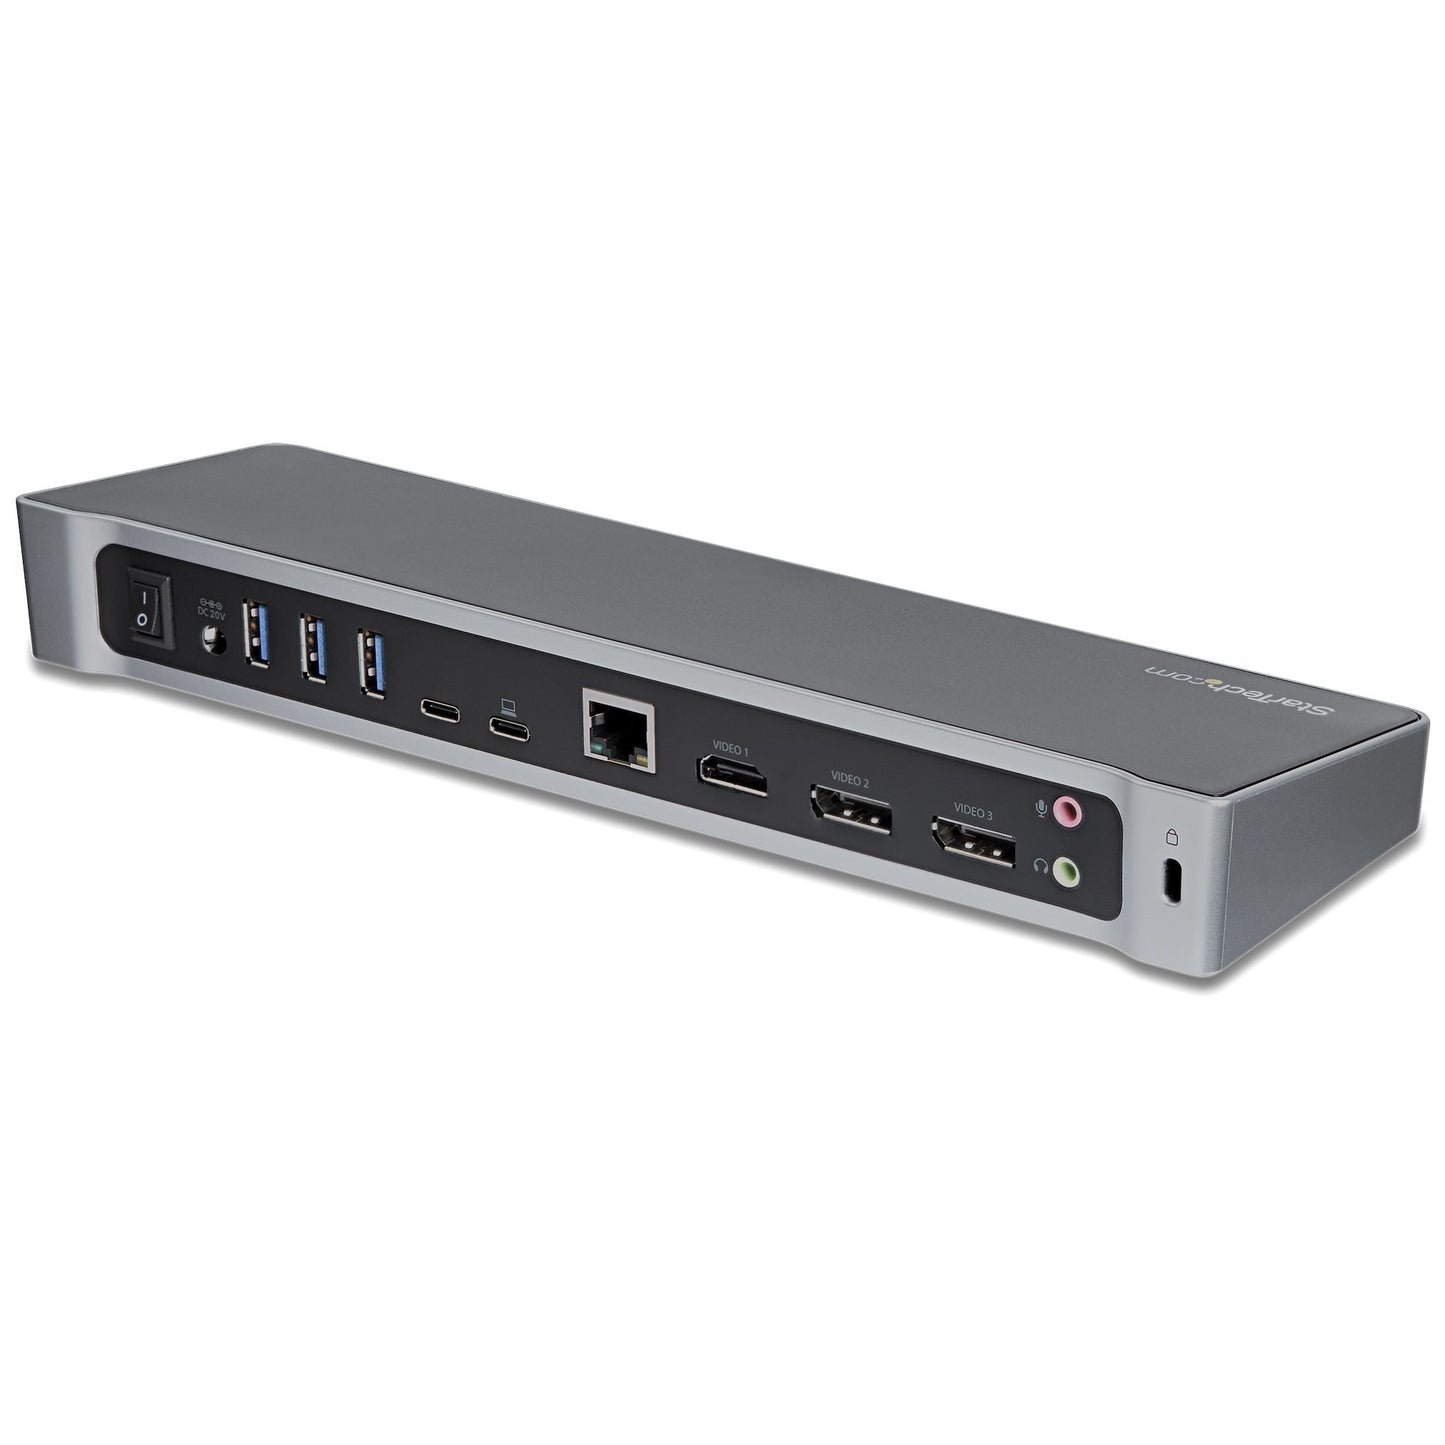 StarTech.com Docking Station DK30CH2DEP USB-C, 2x USB 3.0, 1x HDMI, 2x DisplayPort, 1x RJ-45, Plata/Negro